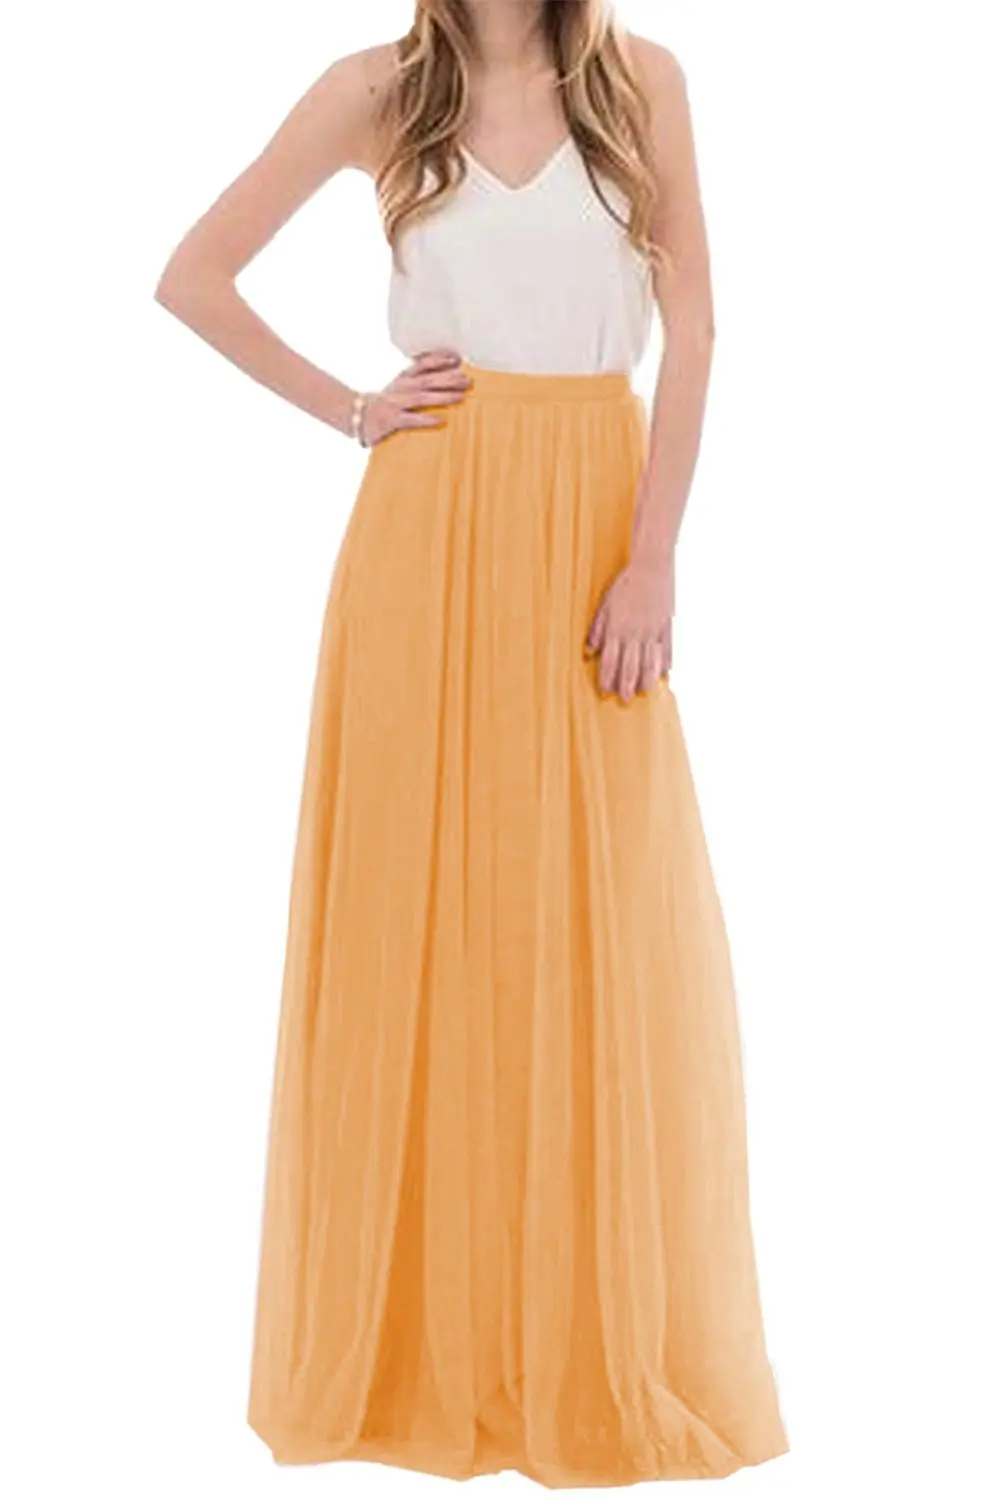 Женская летняя фатиновая юбка, длинная юбка подружки невесты, румяные юбки для выпускного вечера/юбка макси для подружки невесты, вечерние платья Vestidos - Цвет: 609 Orange